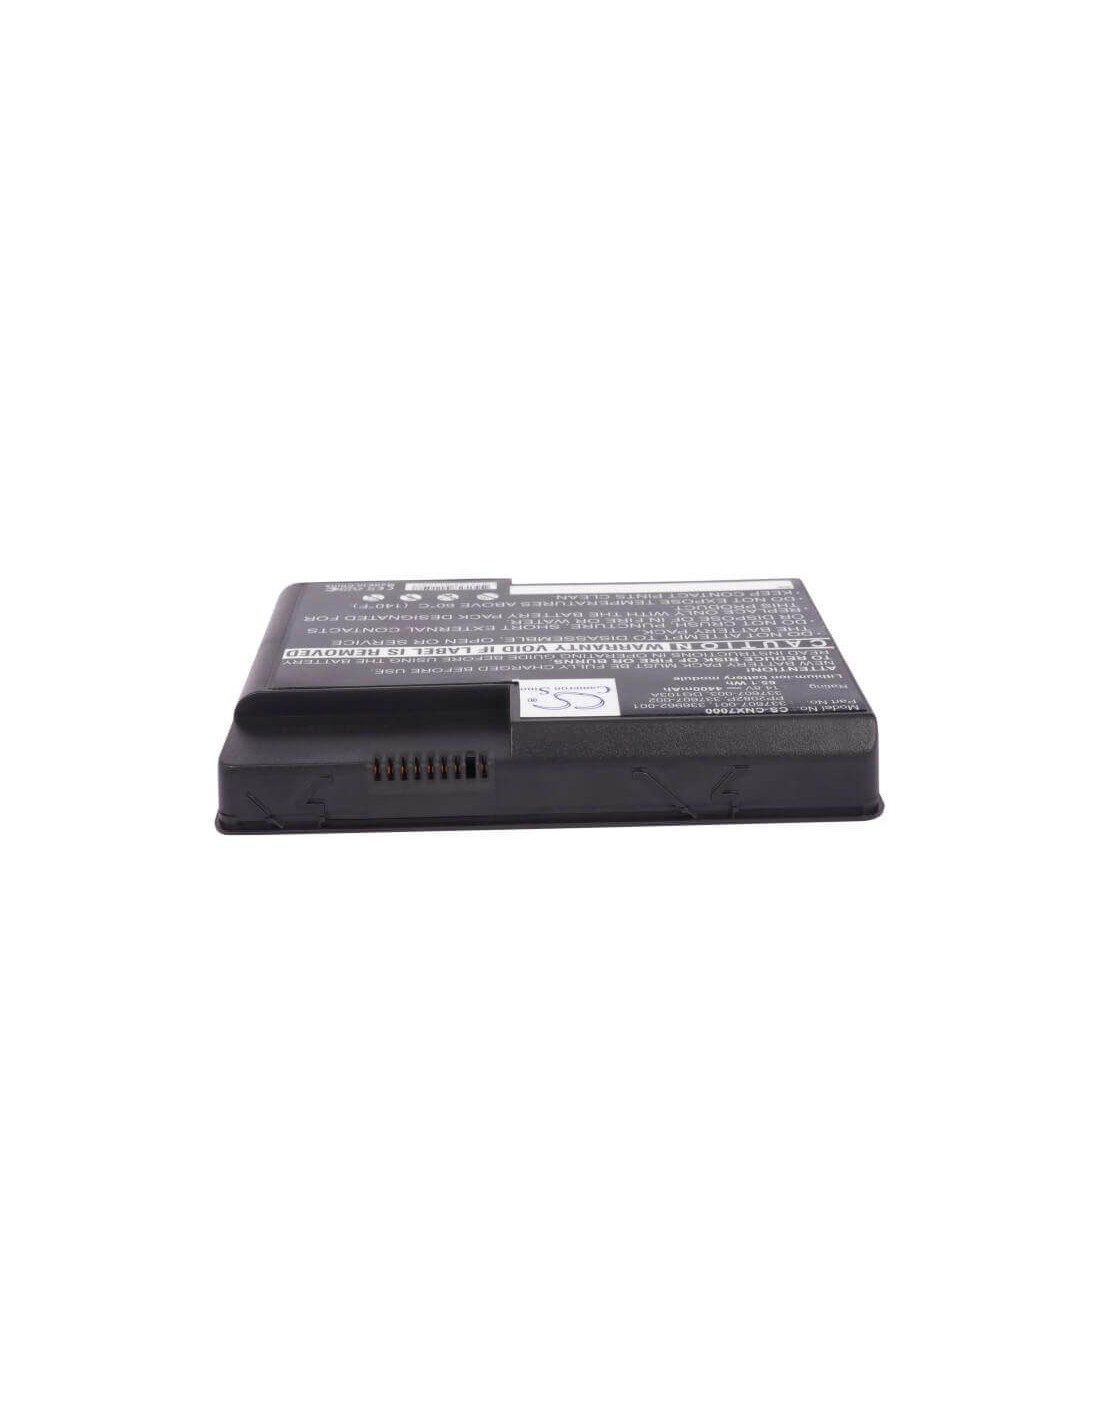 Black Battery for Compaq Presario X1071ap-dq977a, Presario X1098ap-dr828a, Presario X1210us-ds463ur 14.8V, 4400mAh - 65.12Wh